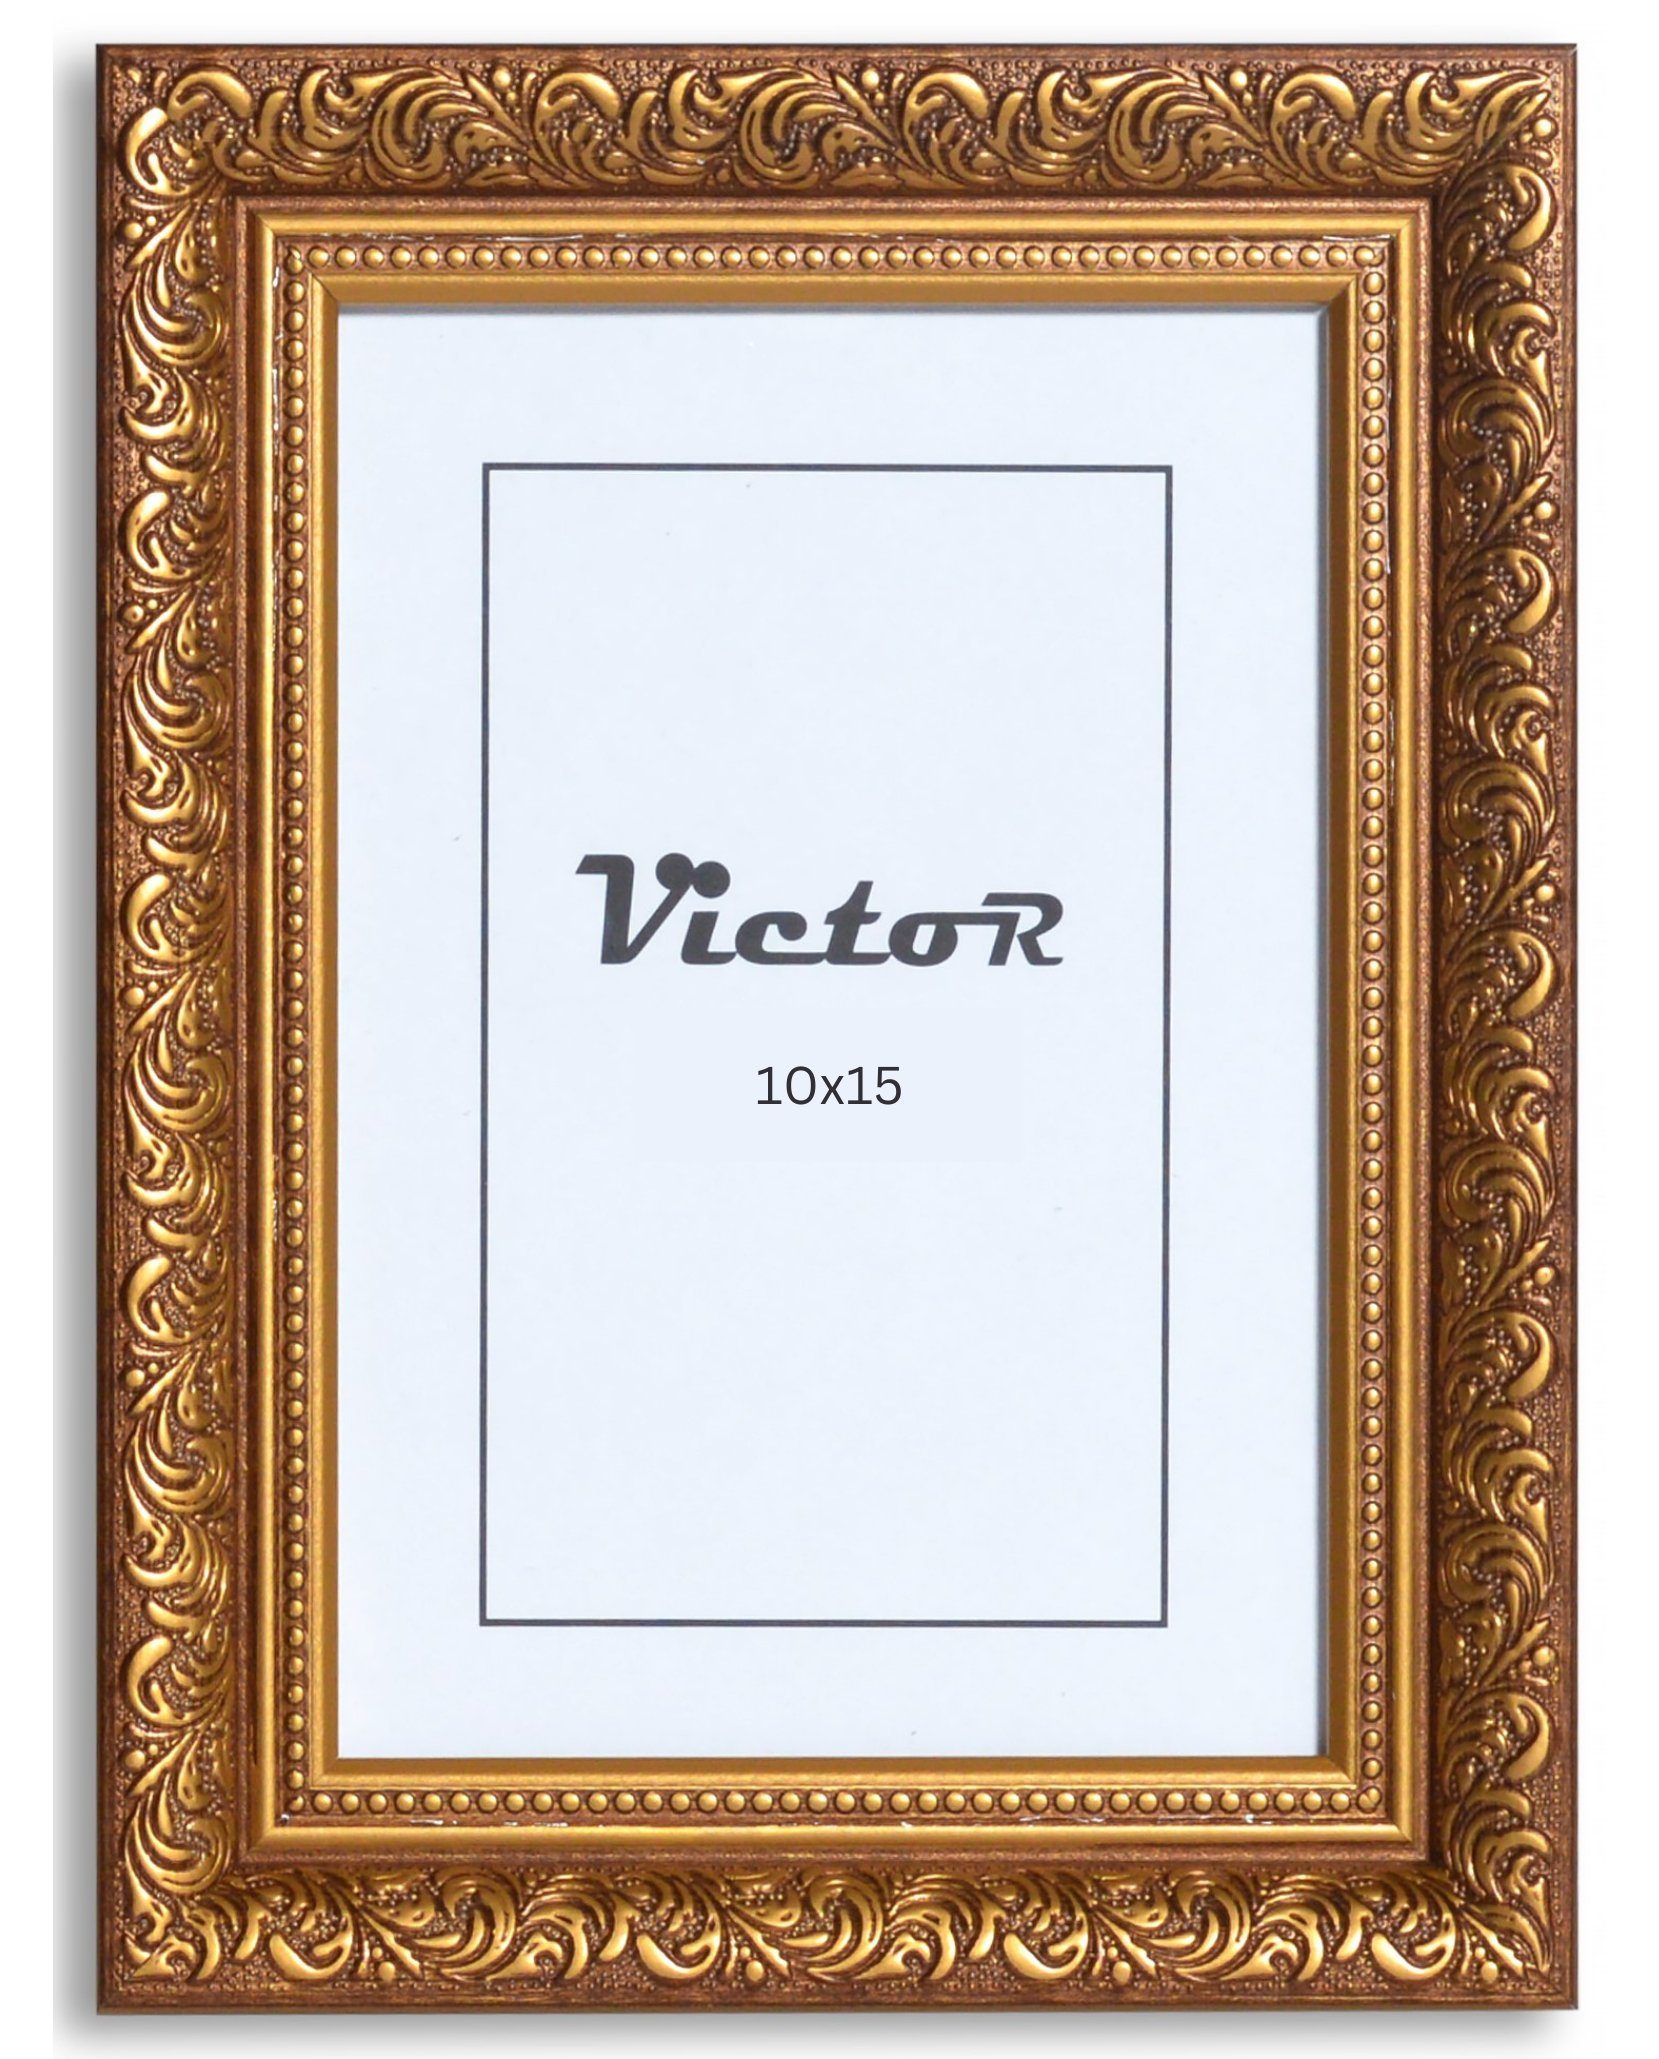 Victor (Zenith) Bilderrahmen Rubens, Bilderrahmen 10x15 cm Braun Gold A6, Bilderrahmen Barock, Antik